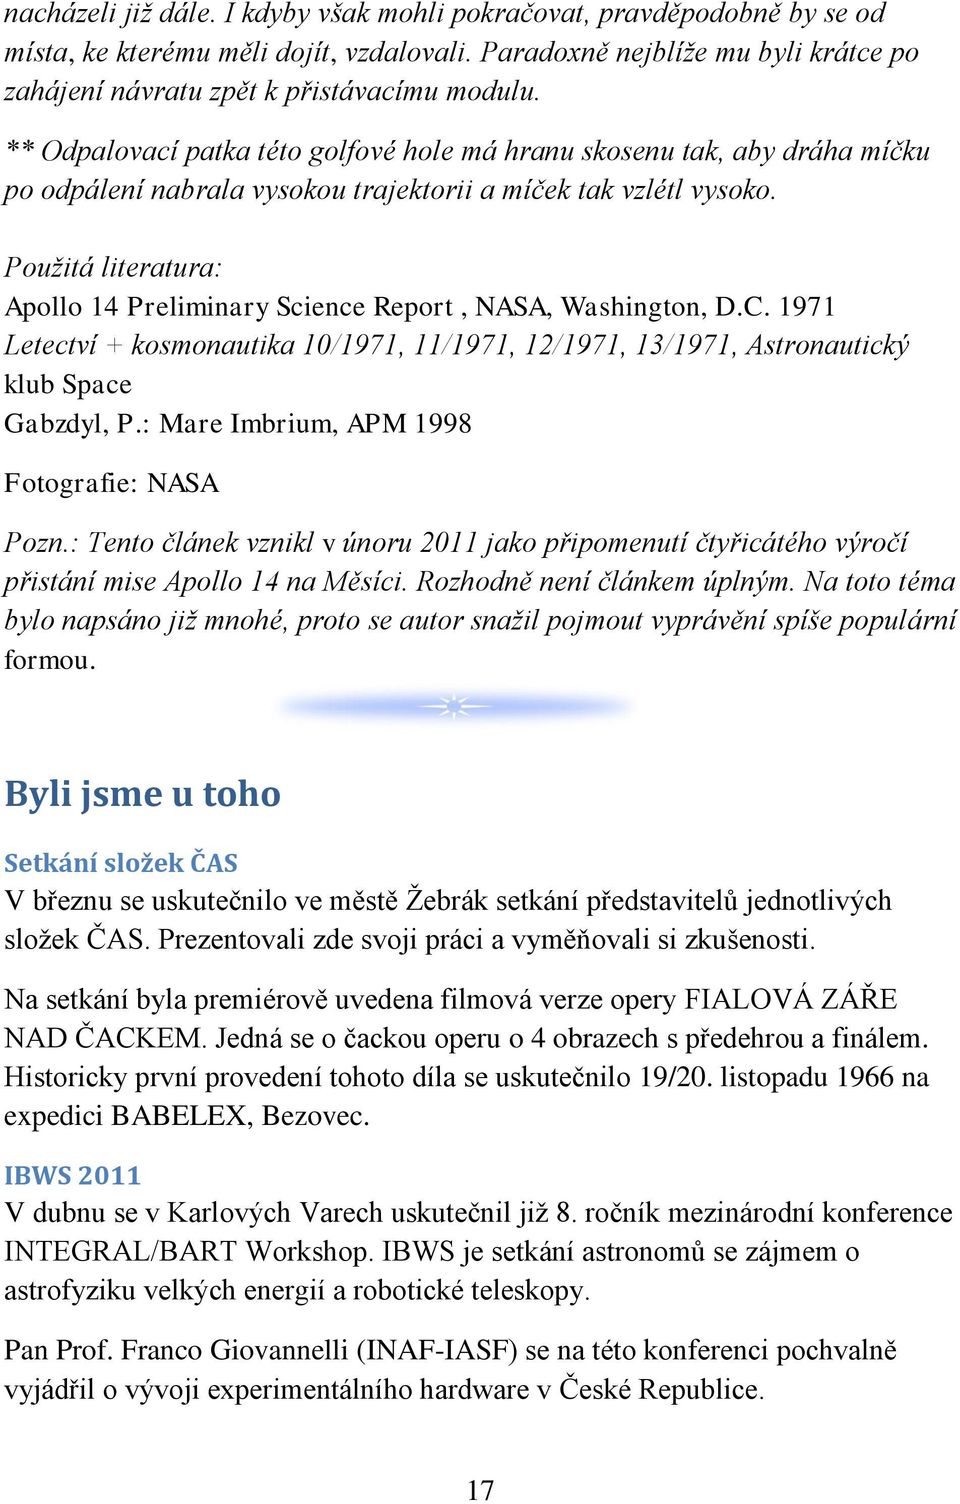 Použitá literatura: Apollo 14 Preliminary Science Report, NASA, Washington, D.C. 1971 Letectví + kosmonautika 10/1971, 11/1971, 12/1971, 13/1971, Astronautický klub Space Gabzdyl, P.